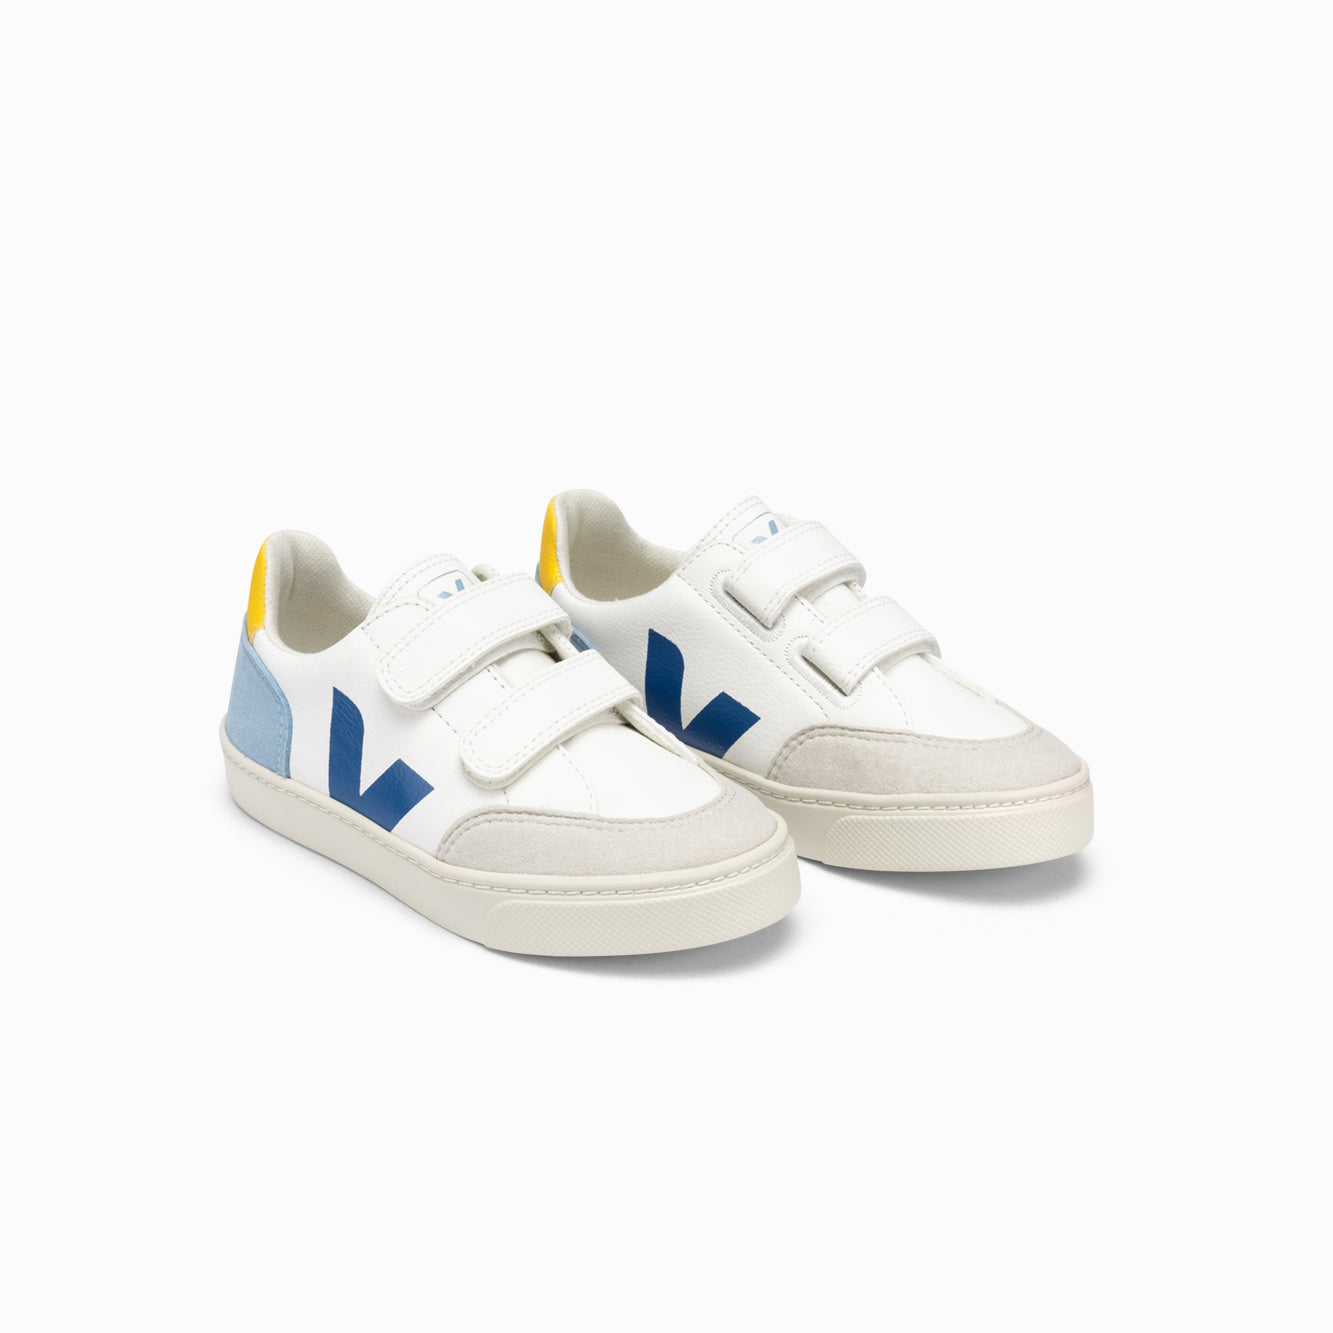 Boys & Girls White "V-12 CHROMEFREE" Shoes